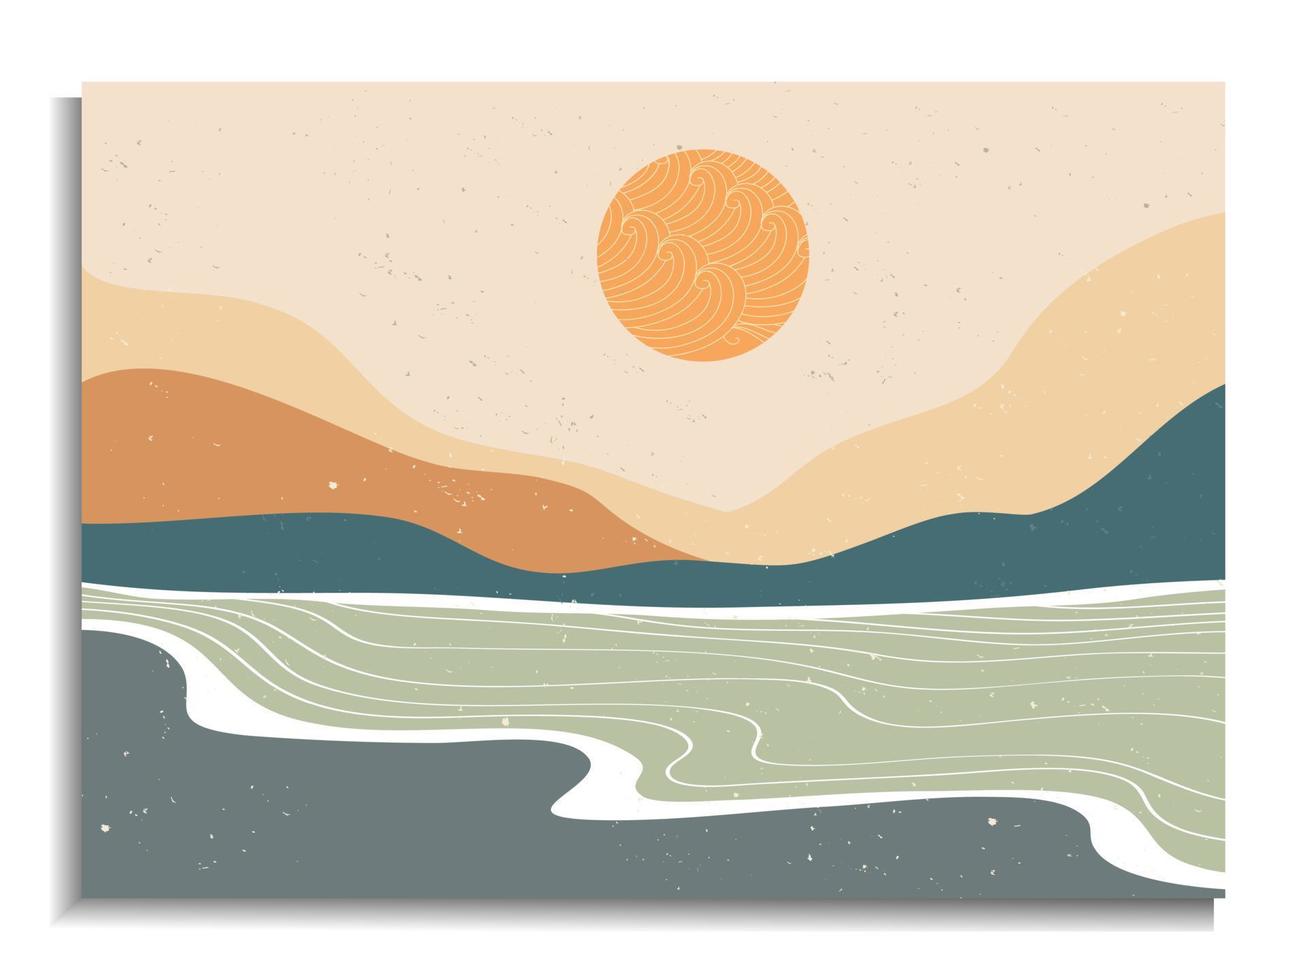 halverwege de eeuw modern minimalistisch. abstracte natuur, zee, lucht, zon, rivier, rock berglandschap poster. geometrische landschapsachtergrond in Skandinavische stijl. vector illustratie